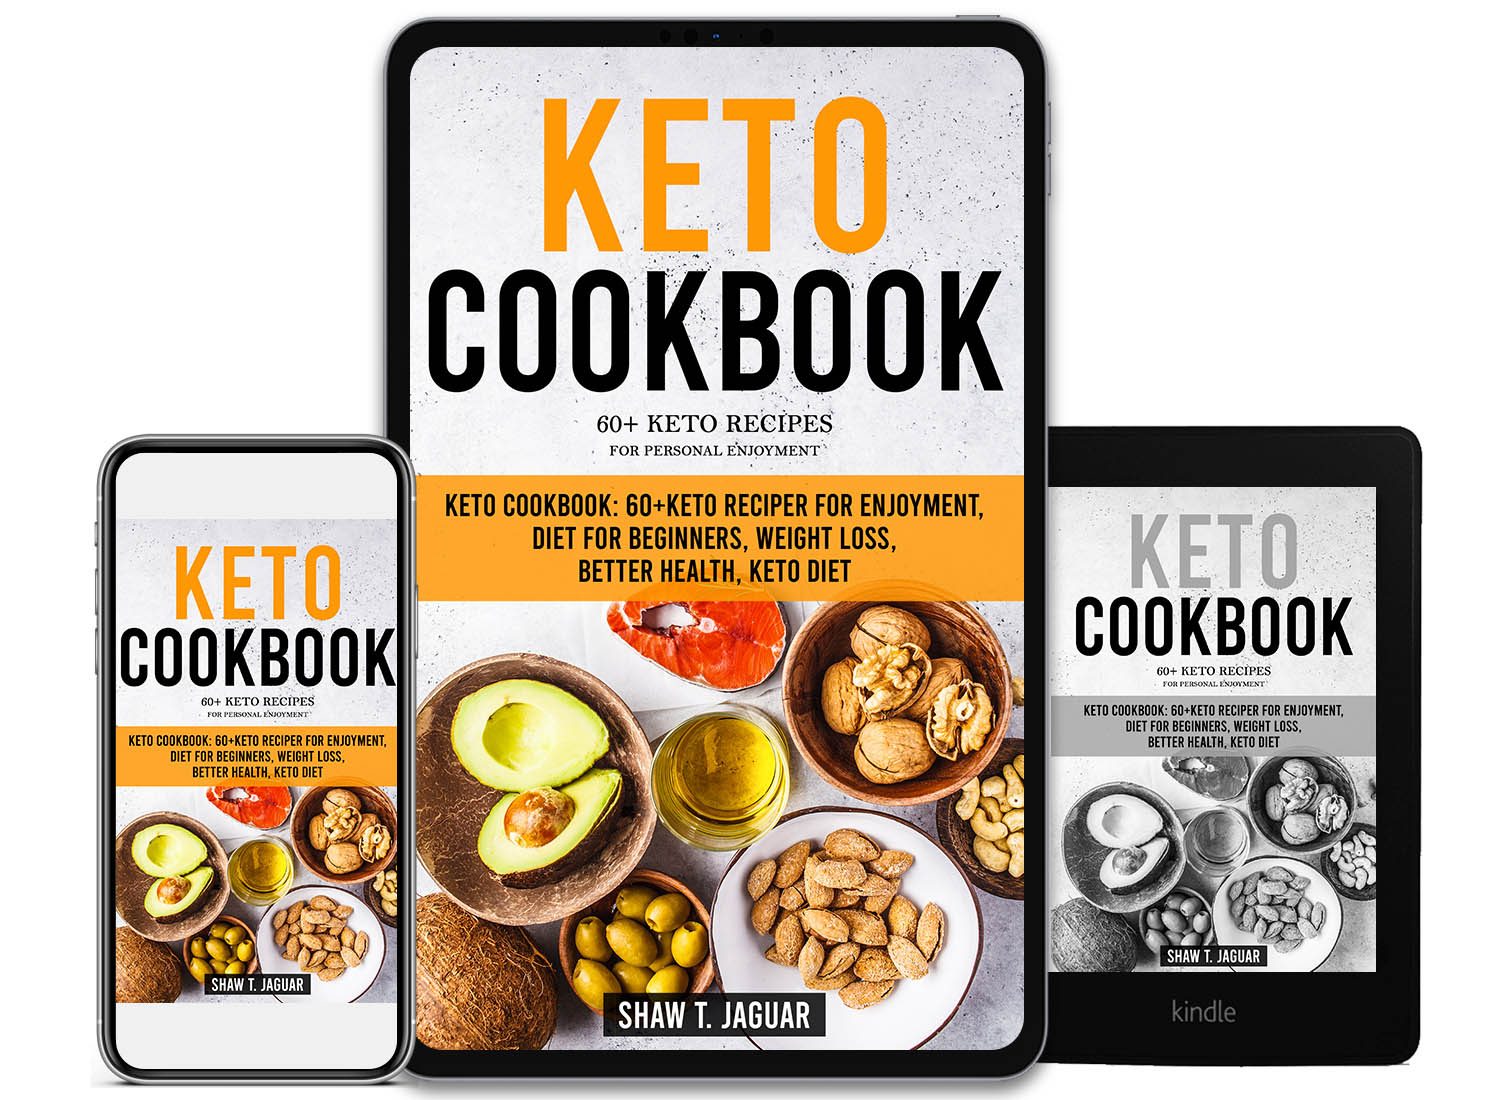 bookconsilio-portfolio-keto-cookbook-ebookcoverdesign-